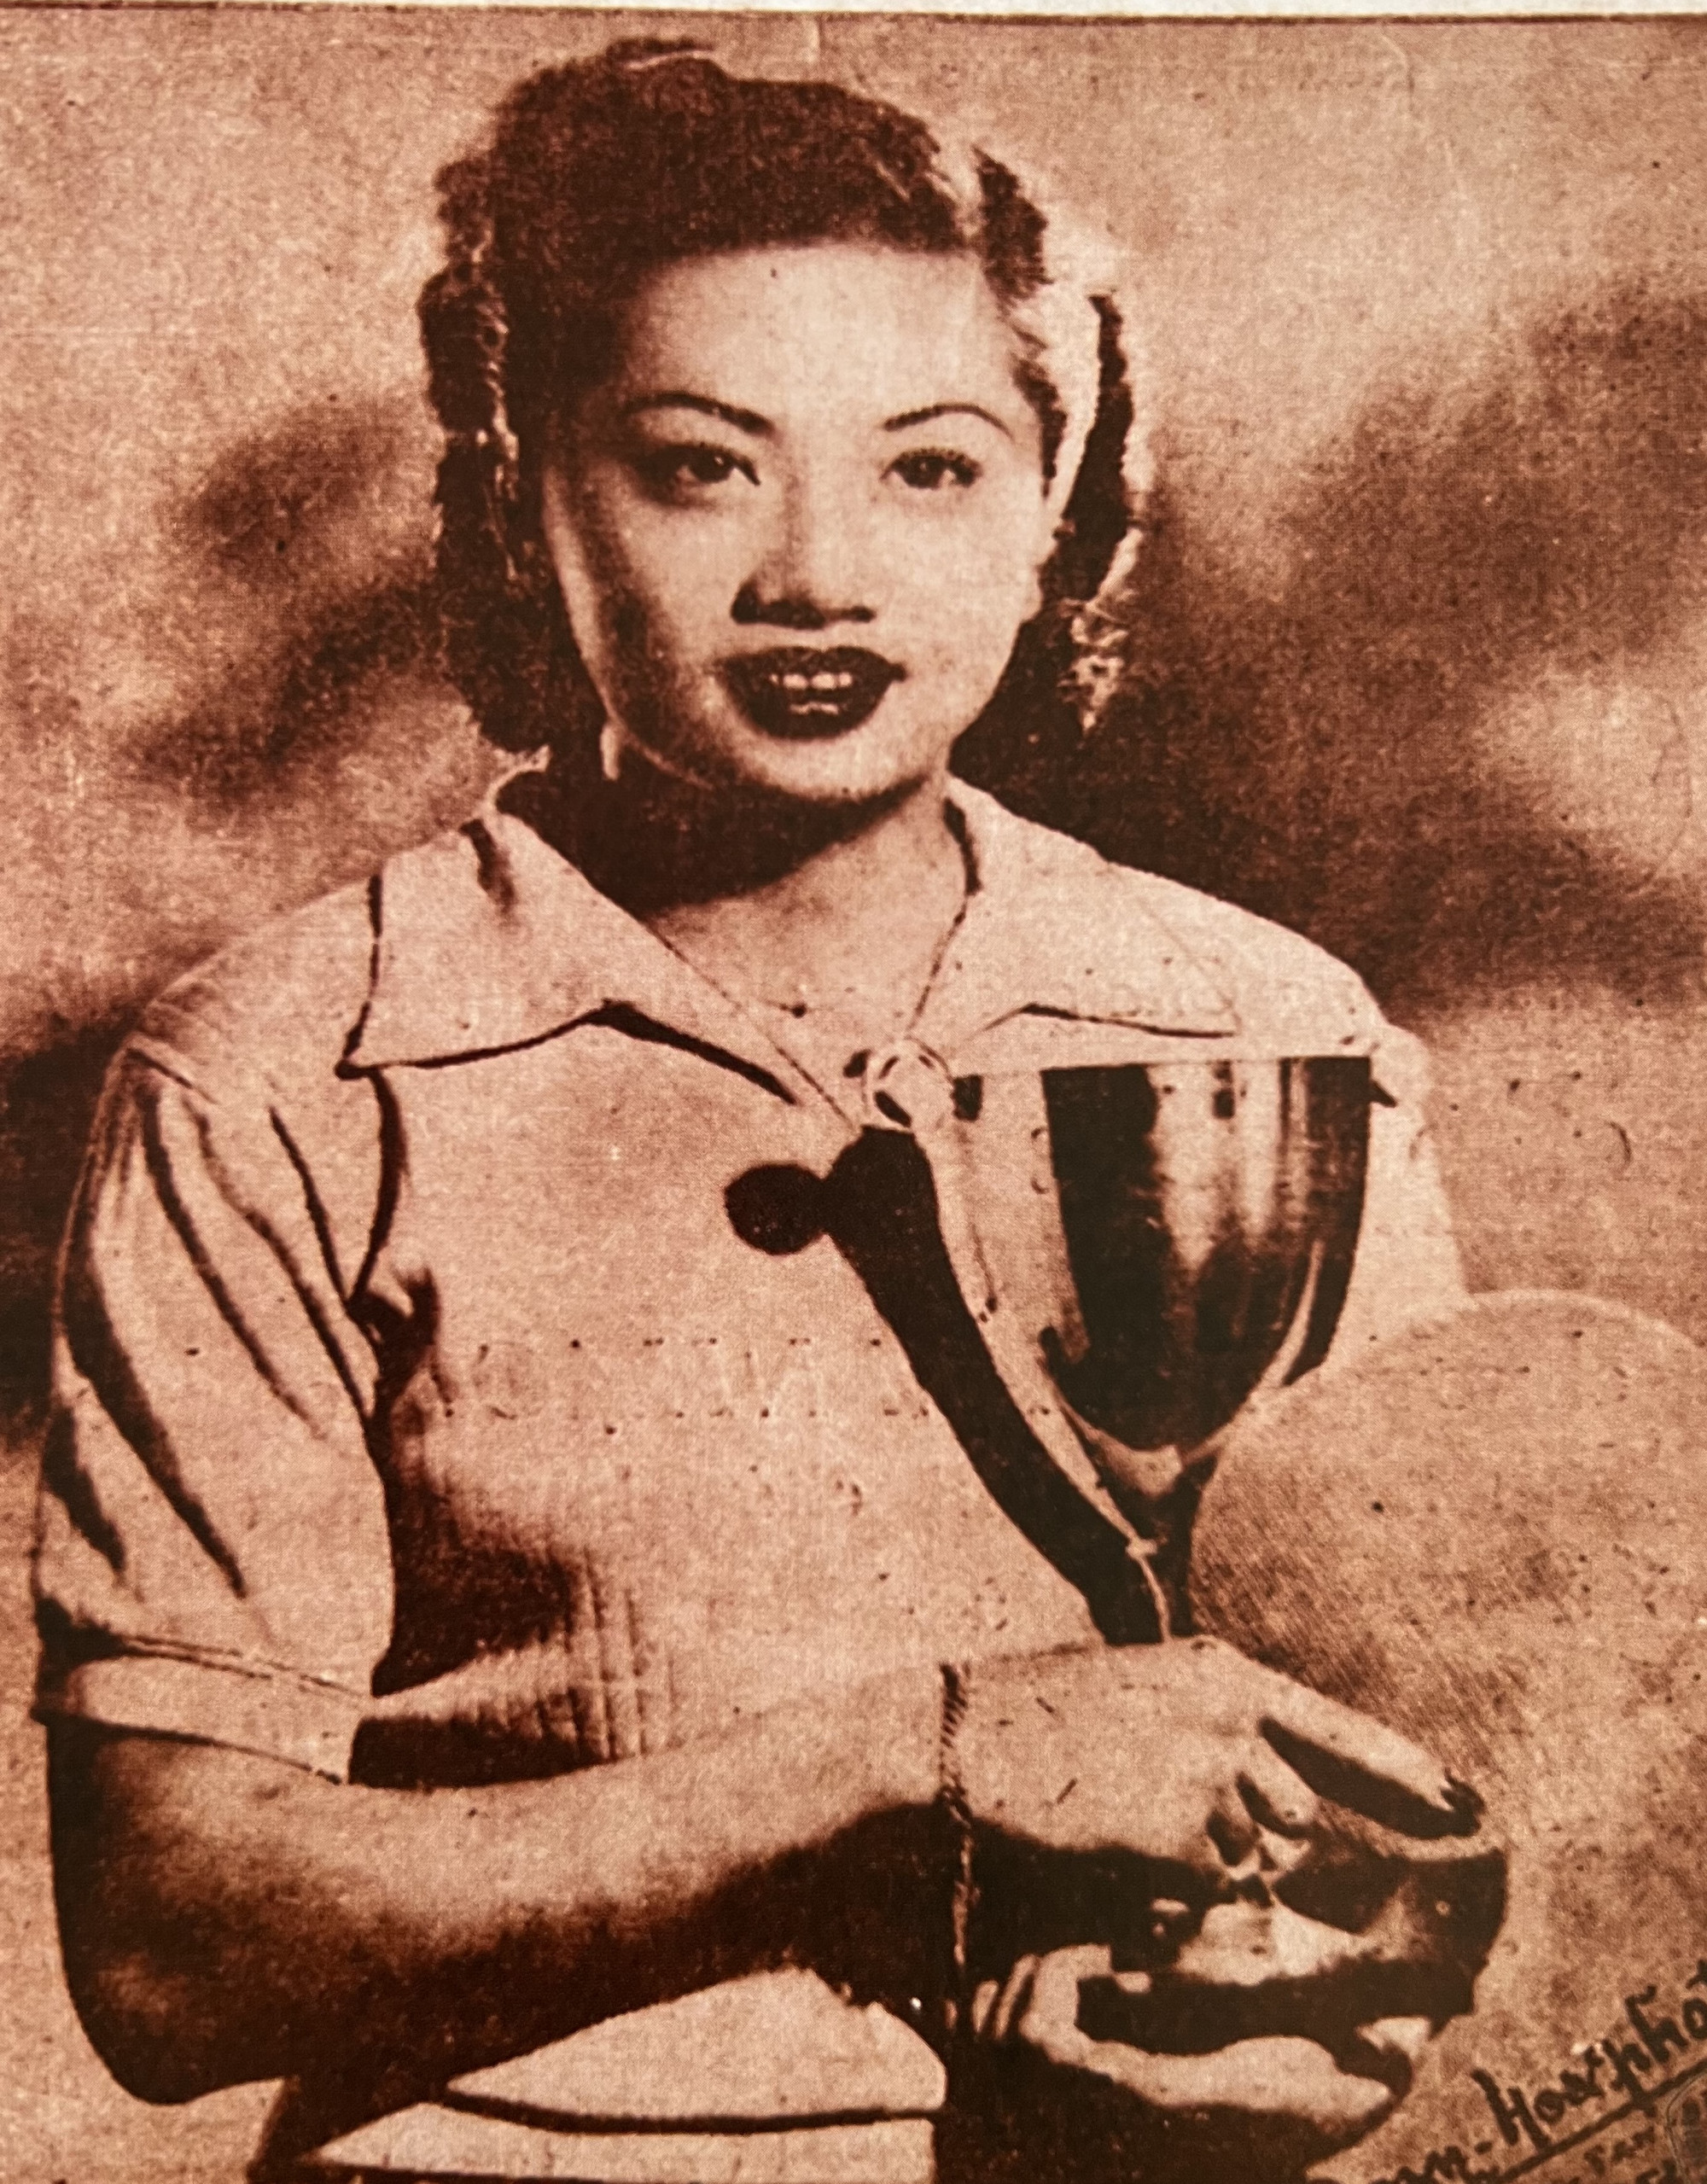 Vận động viên Như Mai trên bìa báo Xuân Vận Động năm 1952